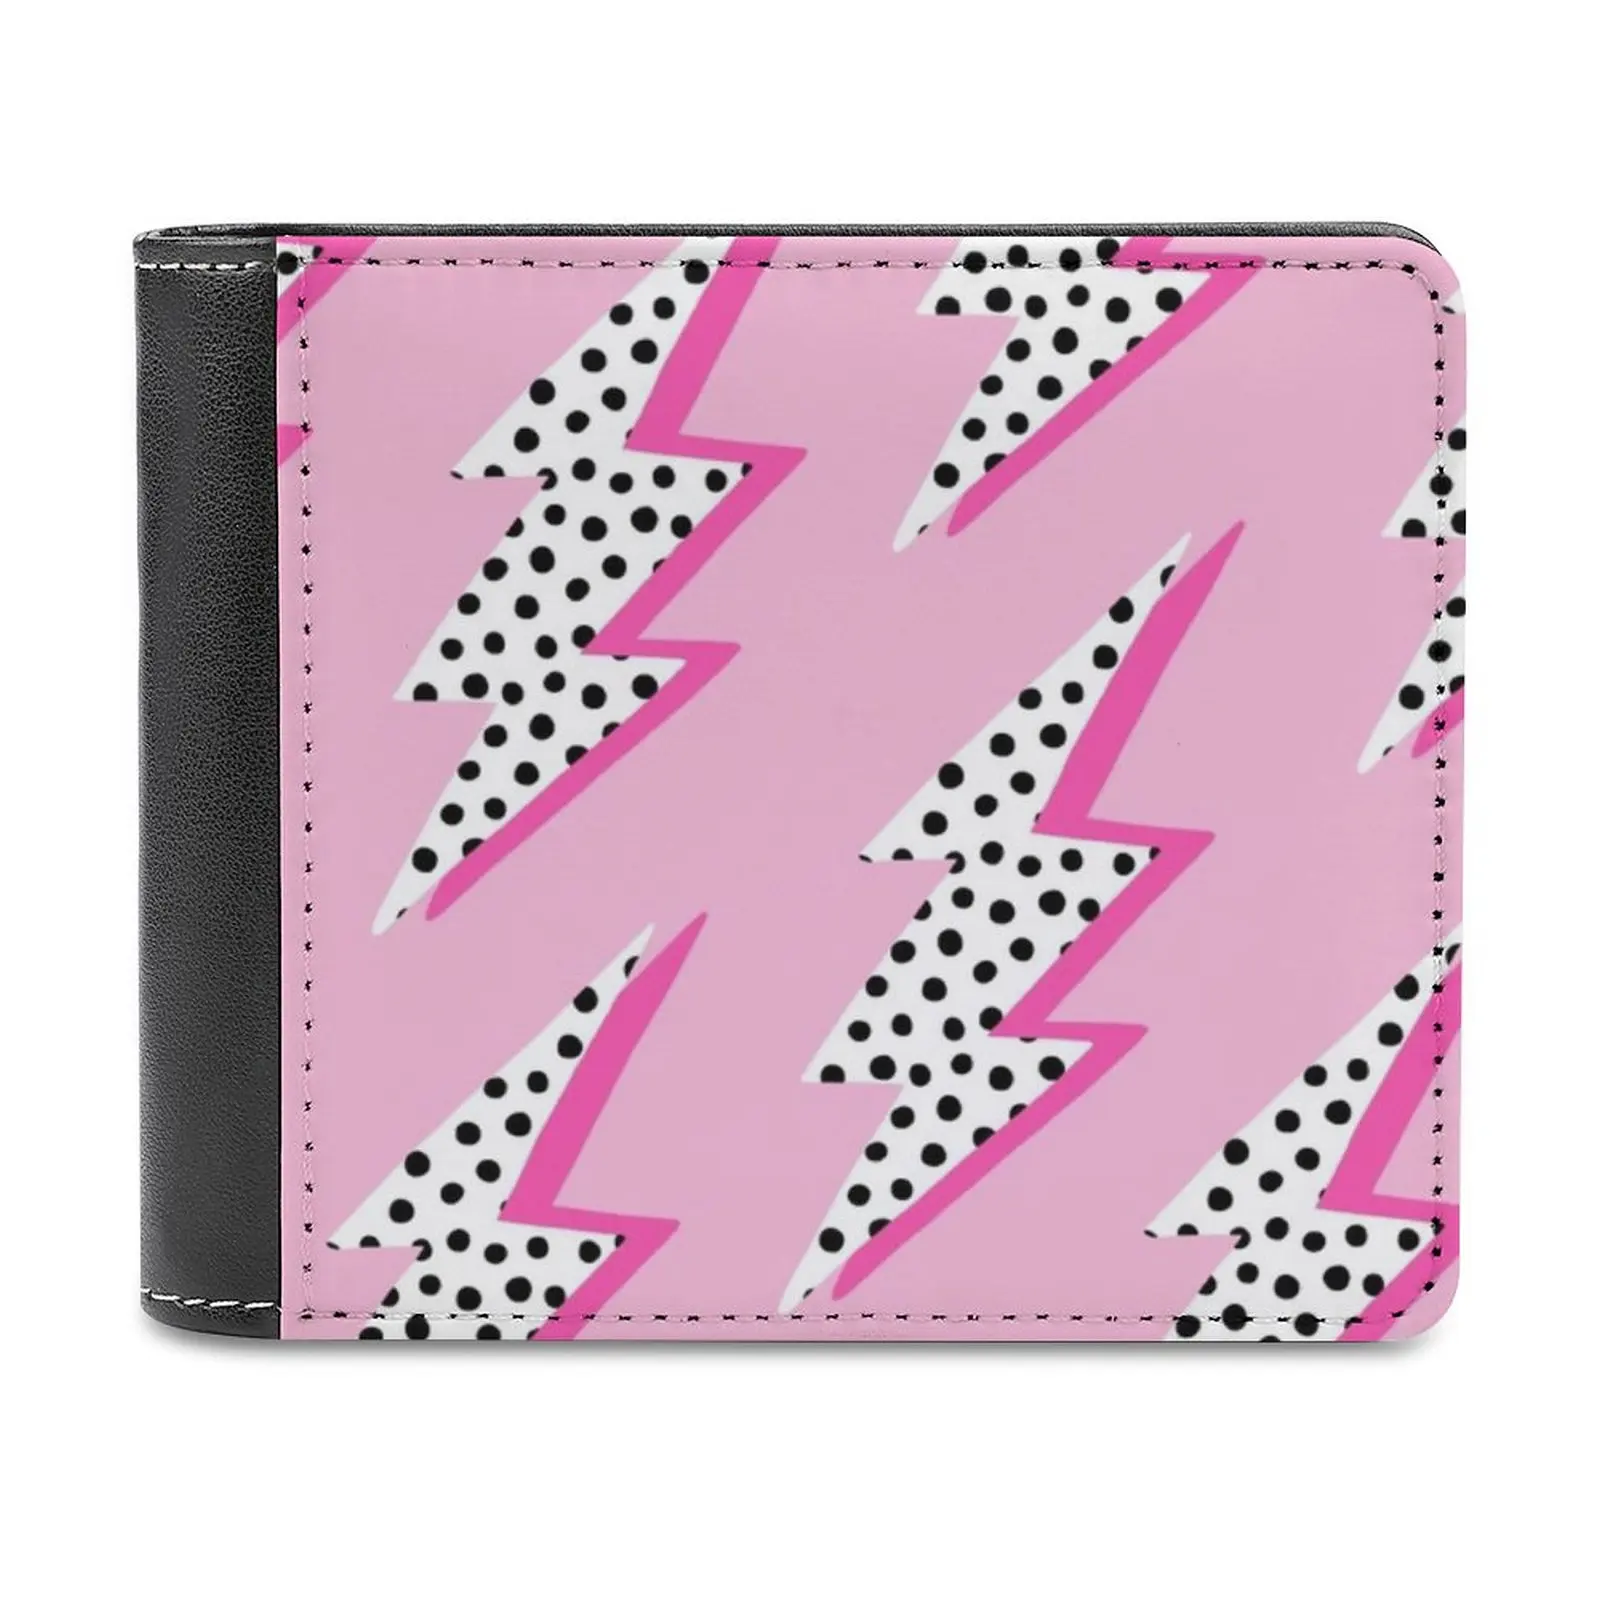 Модный кошелек для кредитных карт Pink Lightning Bolt, кожаные кошельки, персонализированные кошельки для мужчин и женщин Pink Spots Bolt Lightning